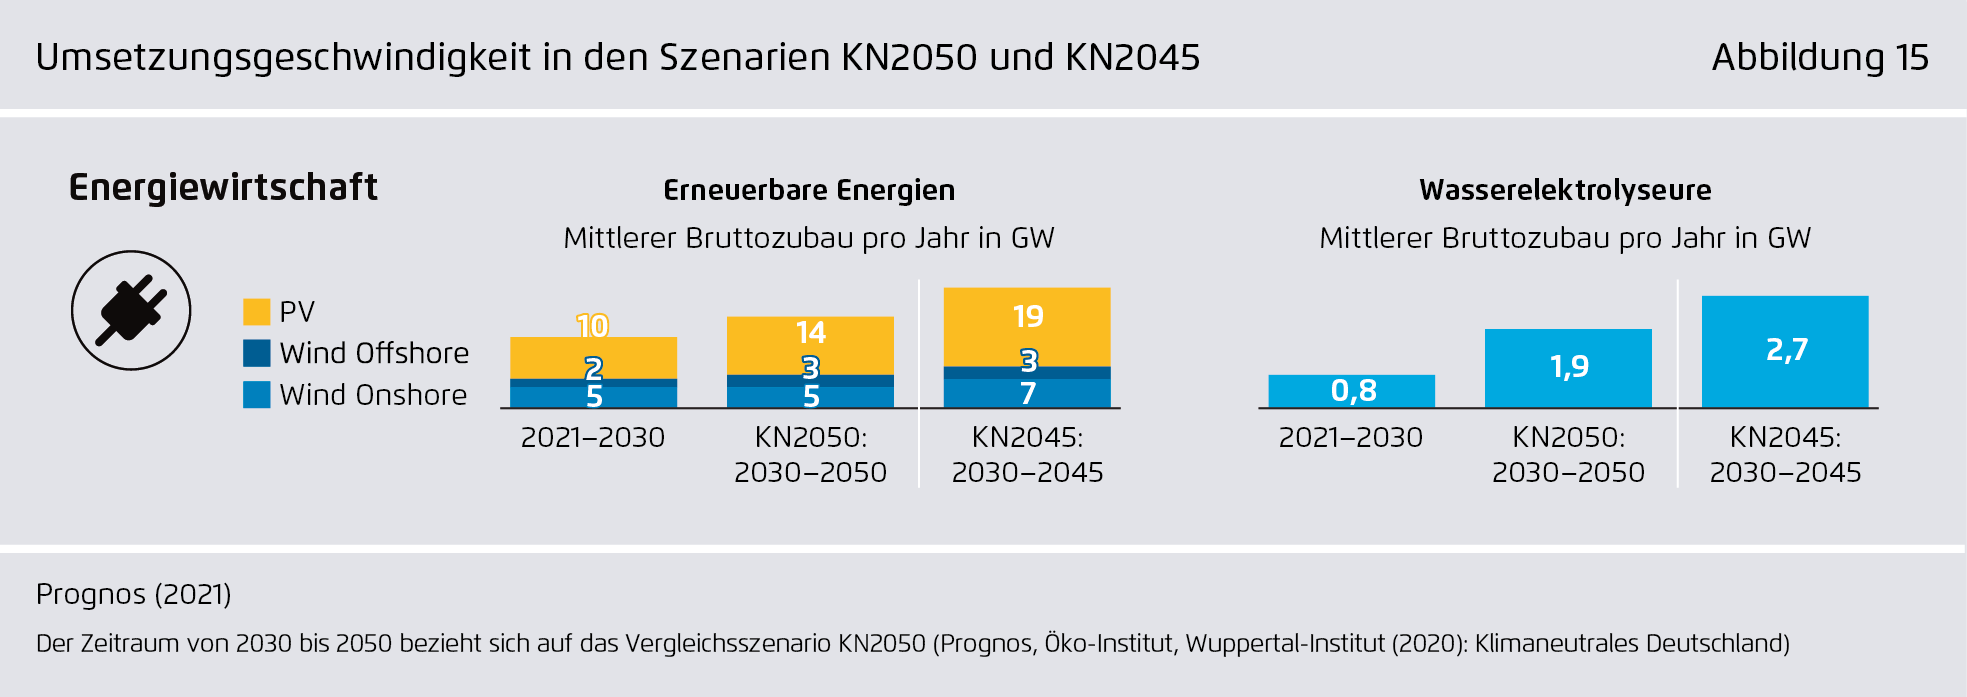 Preview for Umsetzungsgeschwindigkeit in den Szenarien KN2050 und KN2045